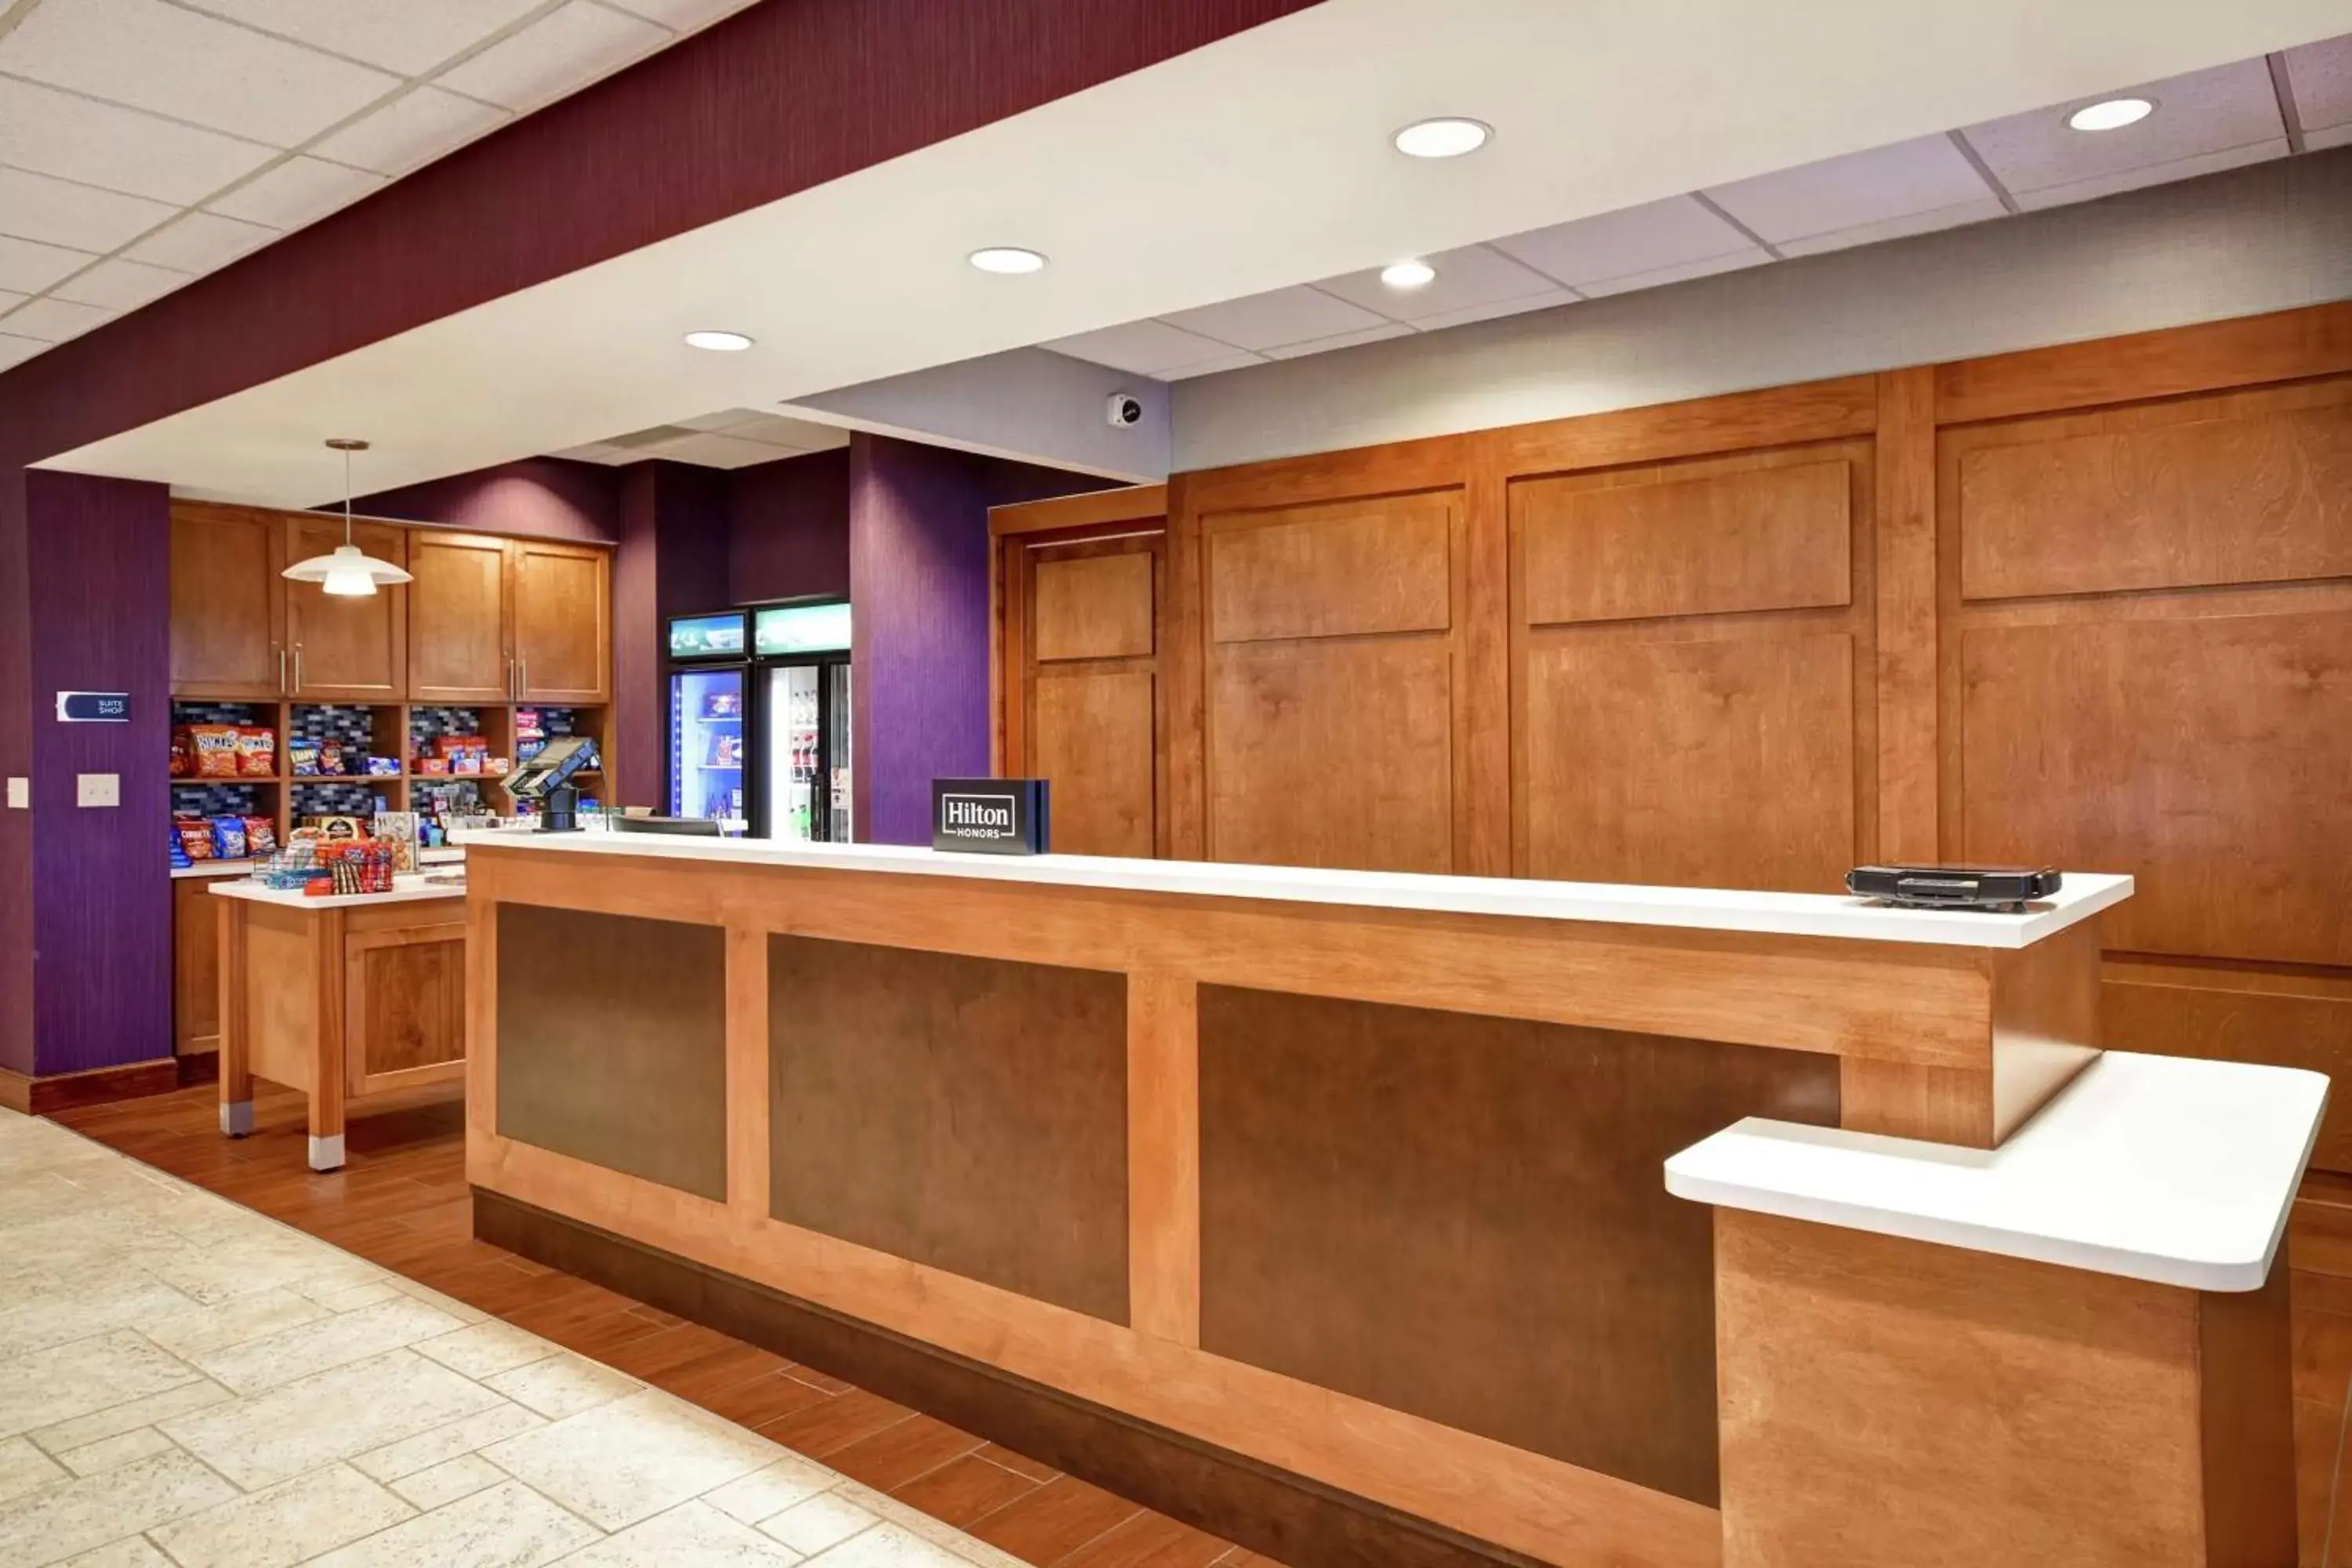 Lobby or reception, Lobby/Reception in Homewood Suites by Hilton Cincinnati-Milford